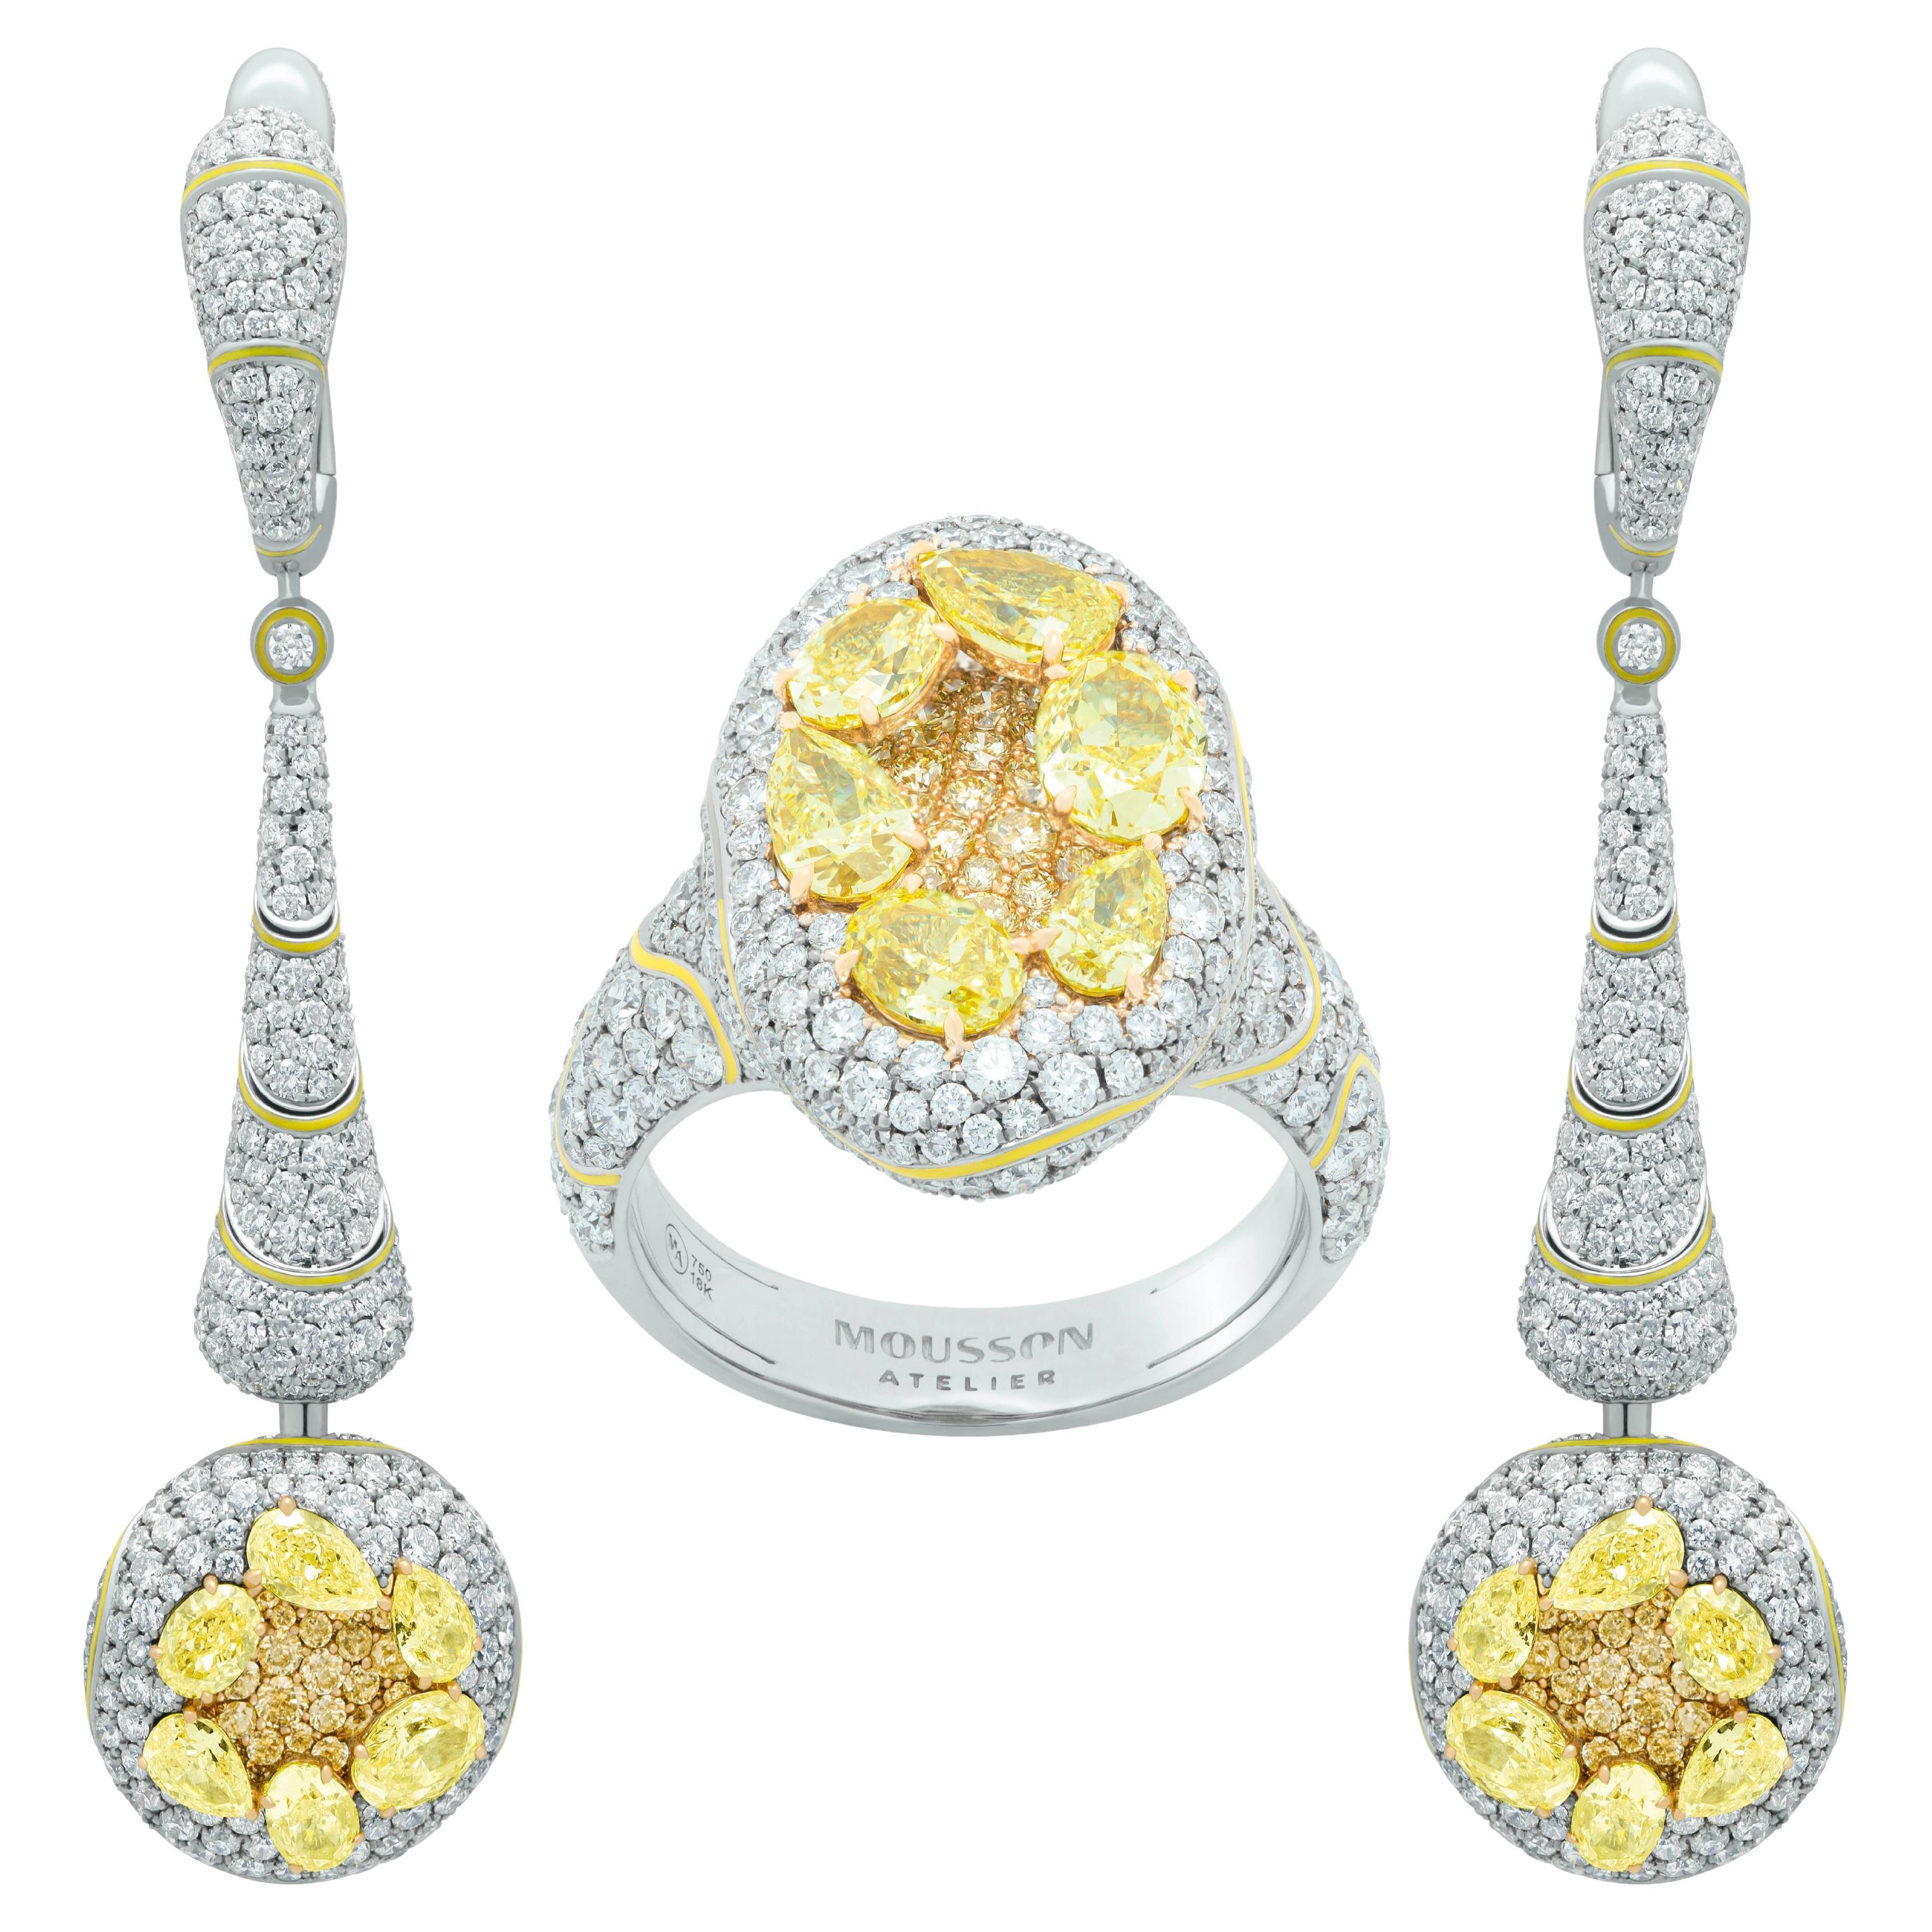 Parure de haute joaillerie en or blanc 18 carats, diamants jaunes et diamants blancs émaillés